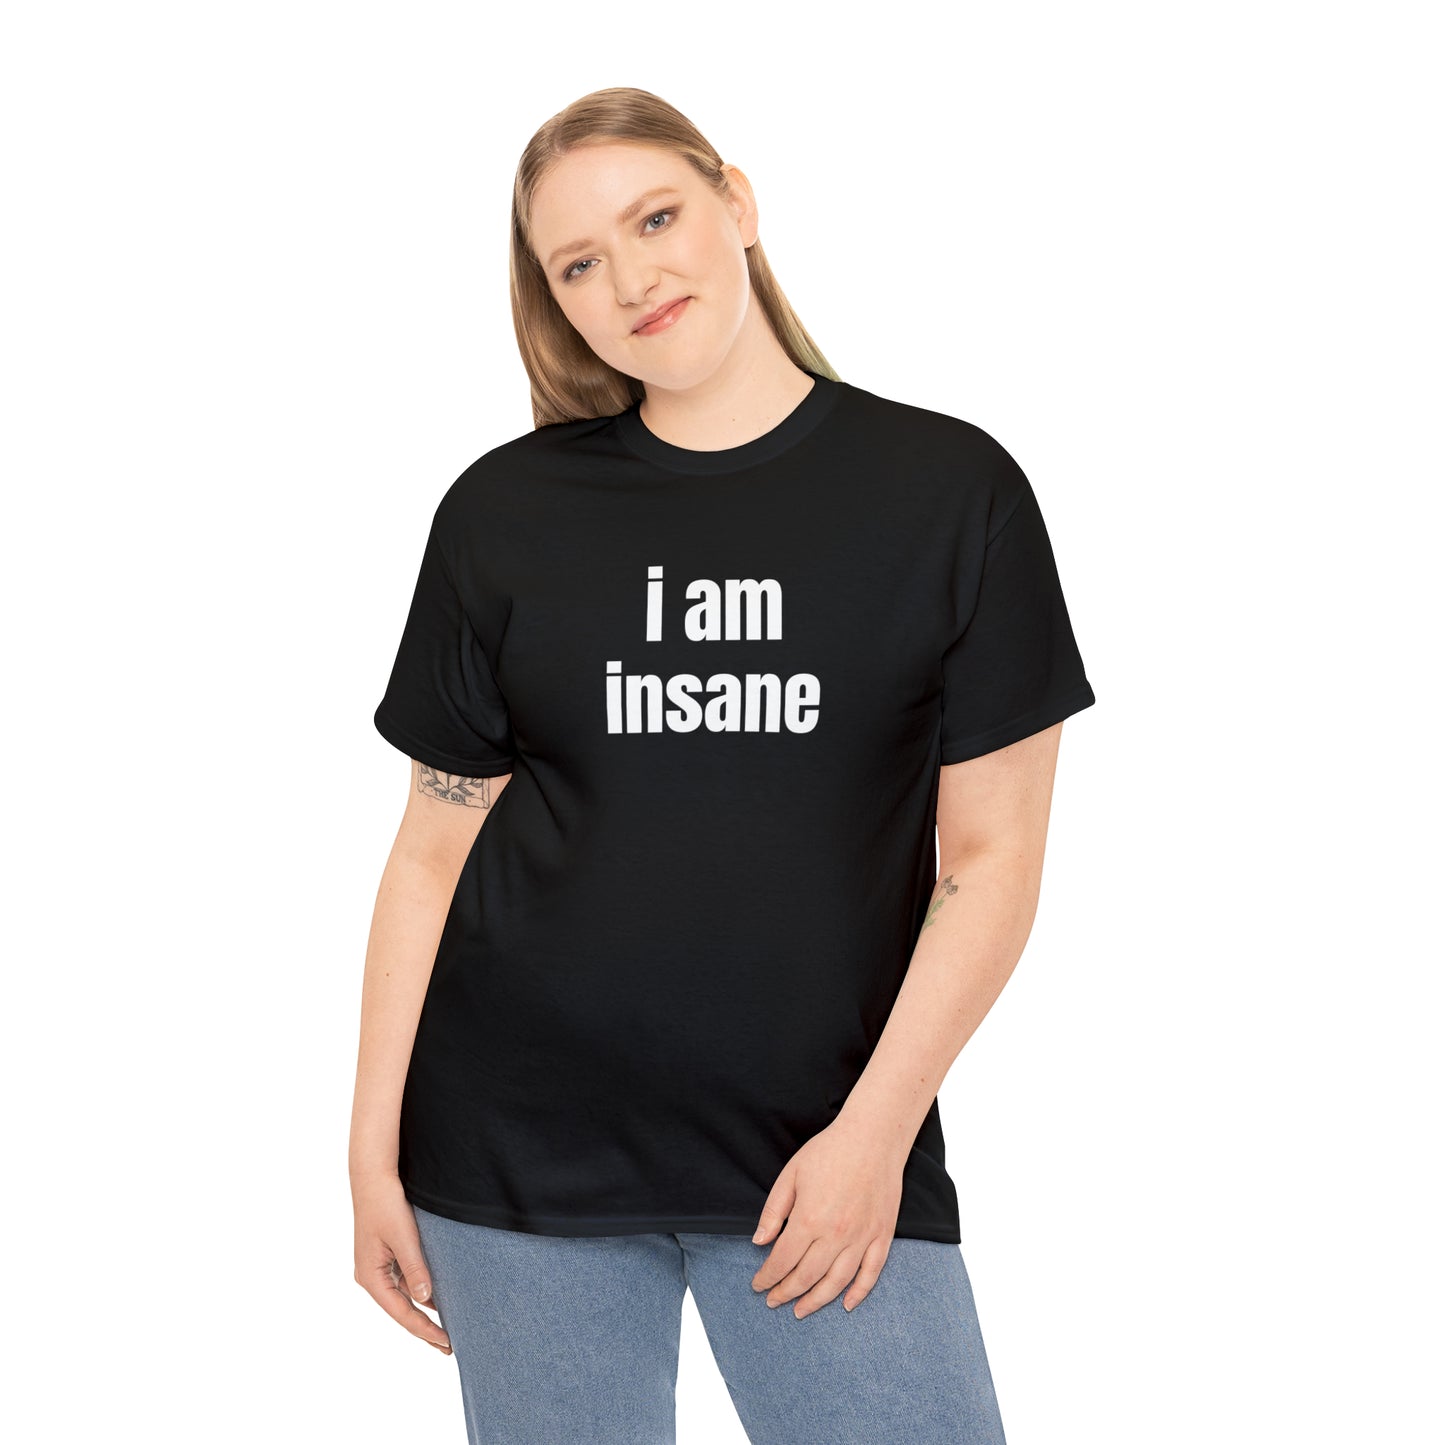 I AM INSANE T-SHIRT